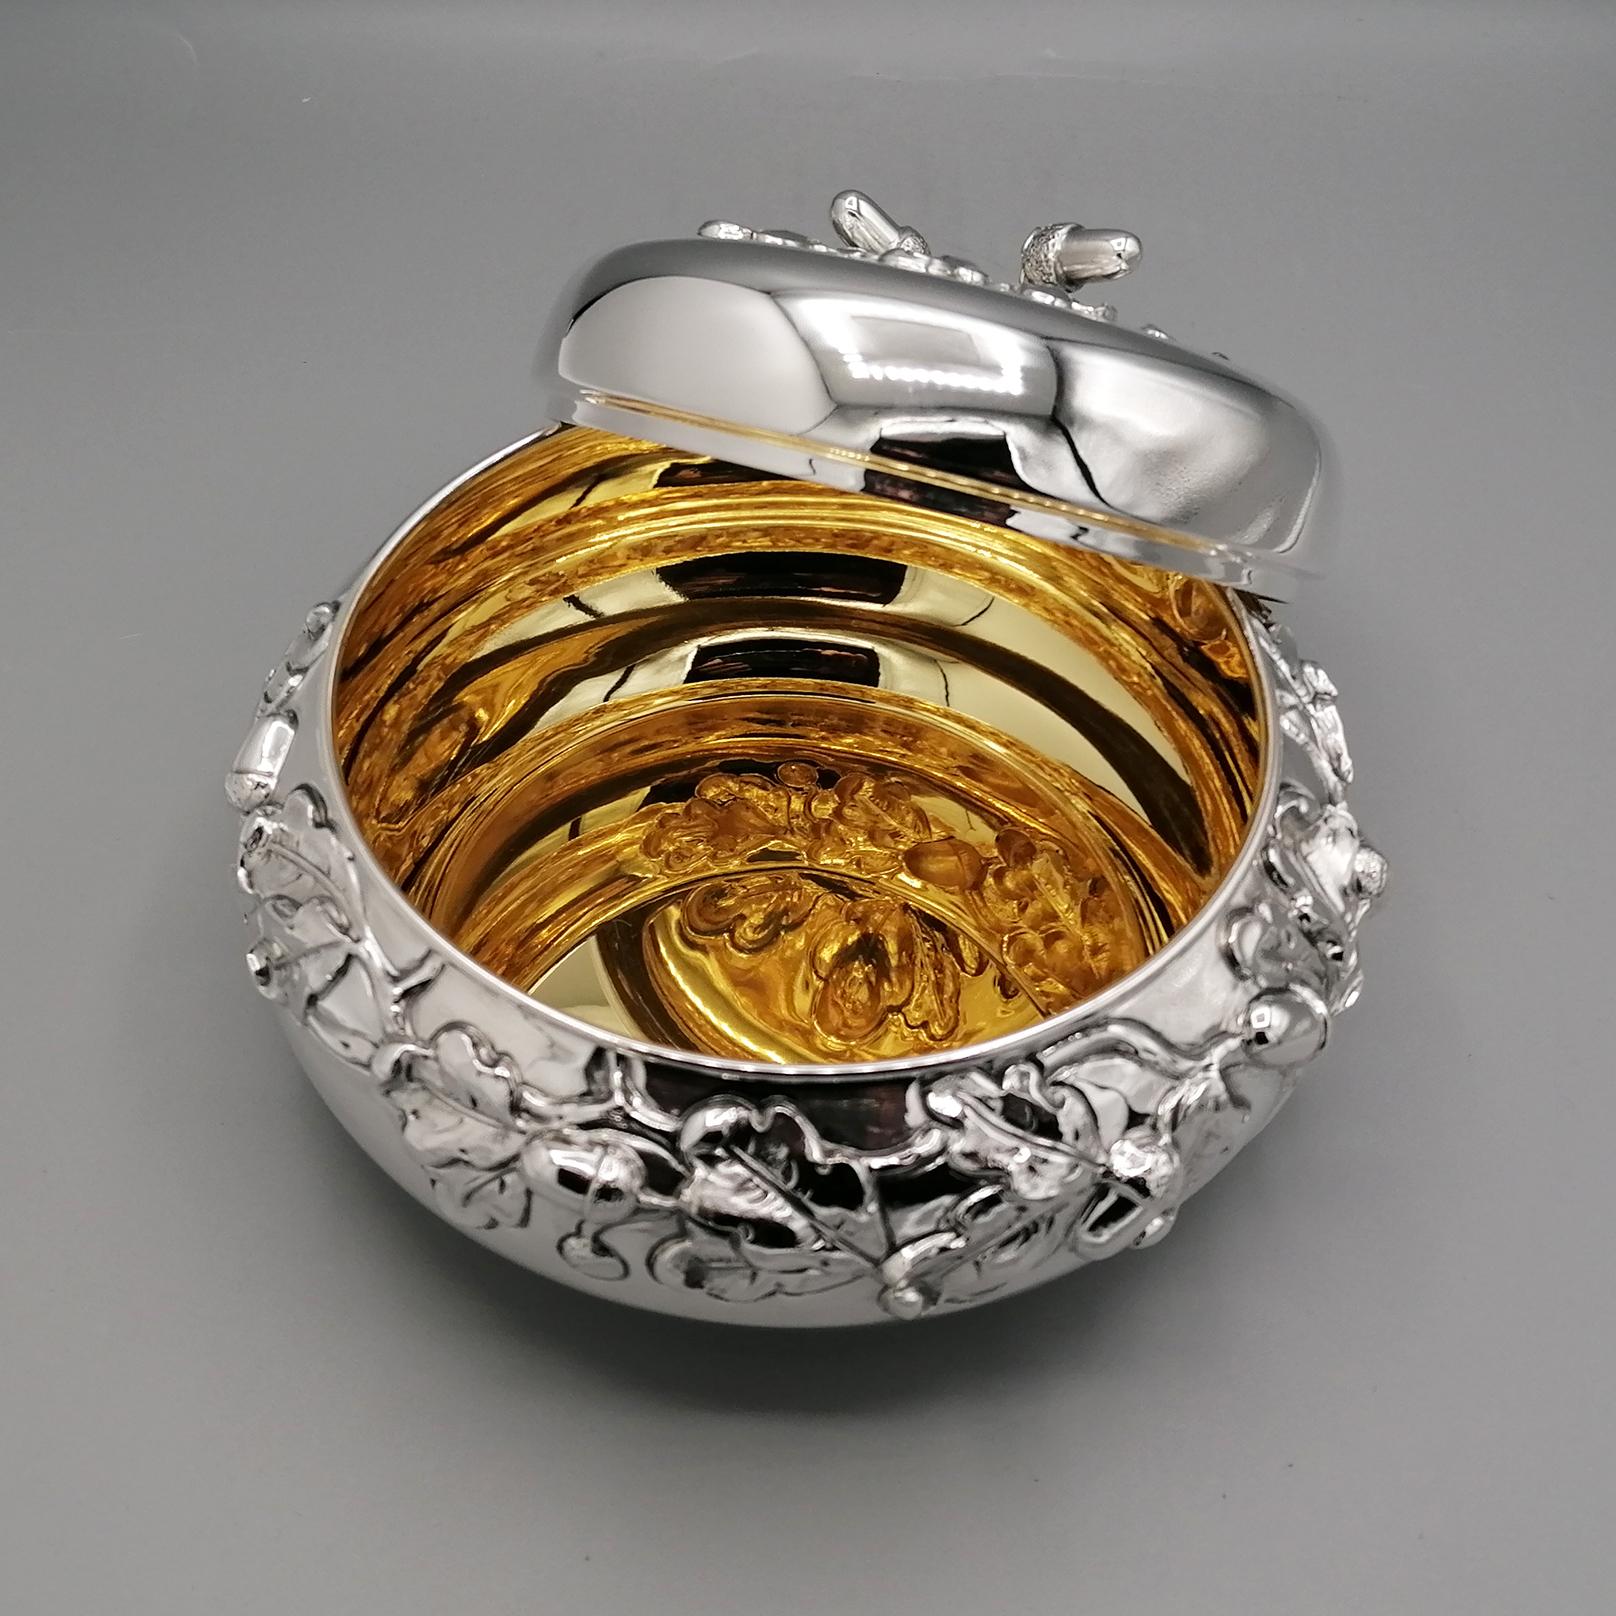 Italian Solid Silver decorative Round Box  For Sale 3